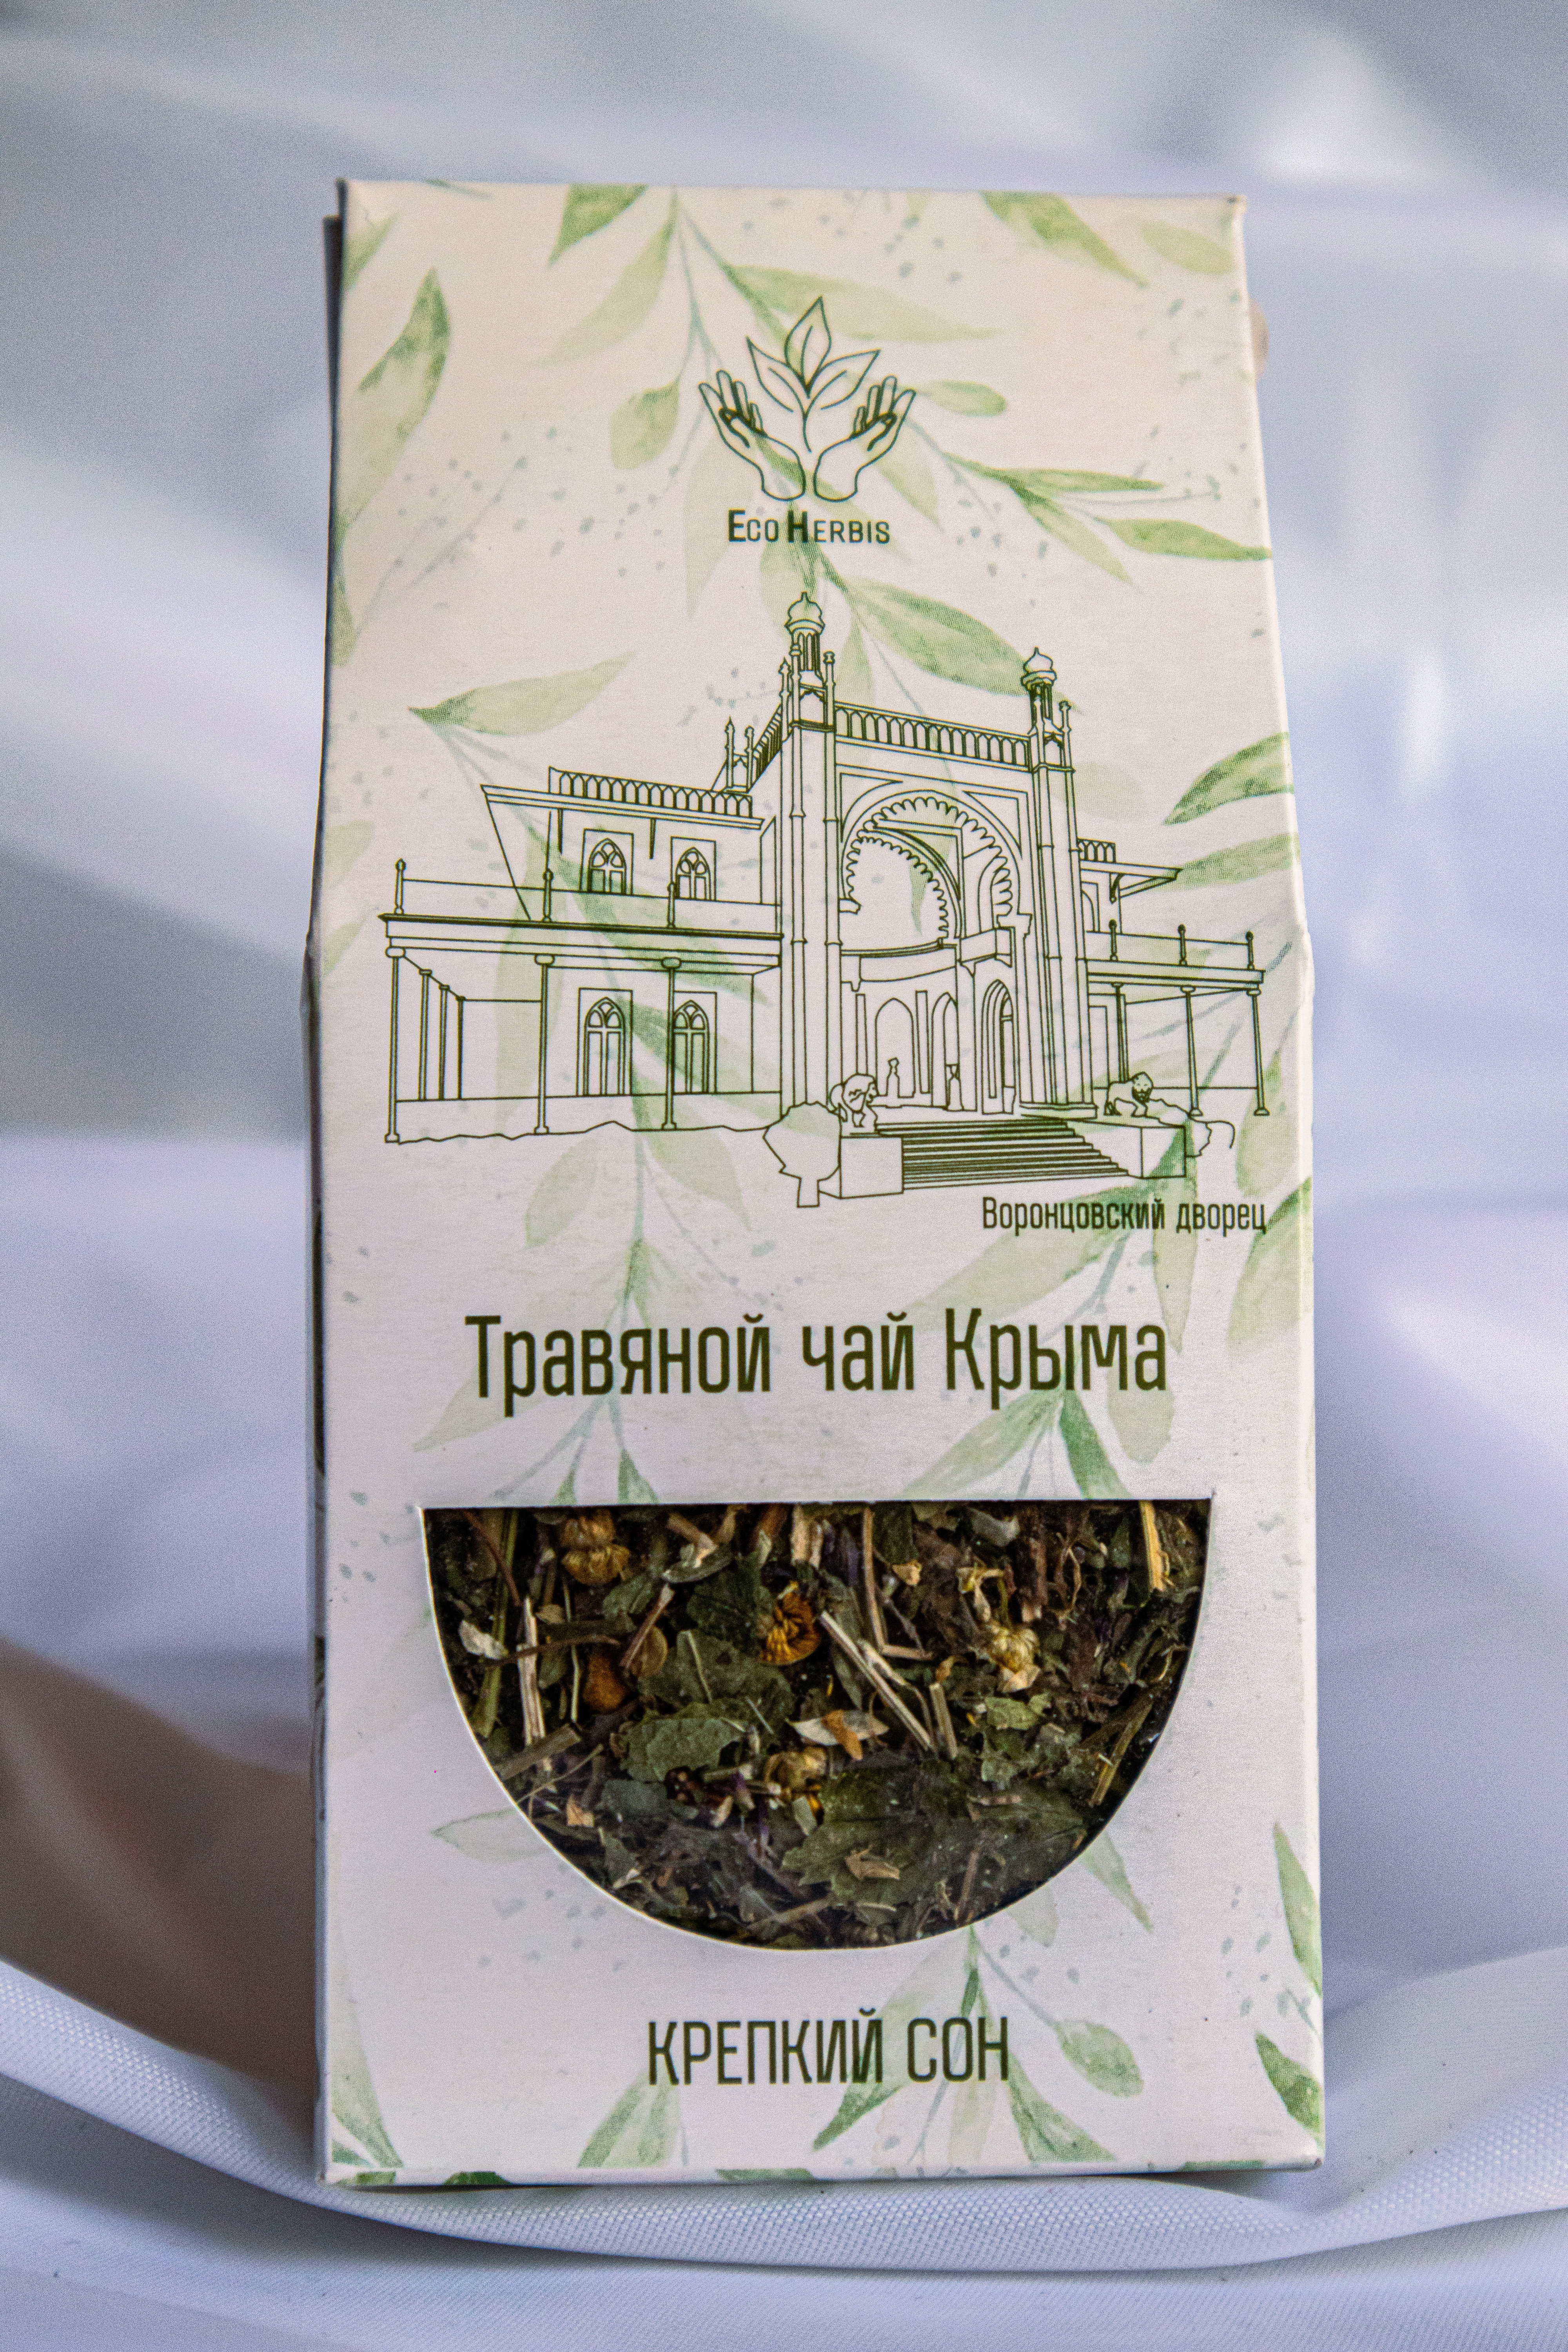 Чайный напиток Крымских трав «Крепкий сон» 35 гр.